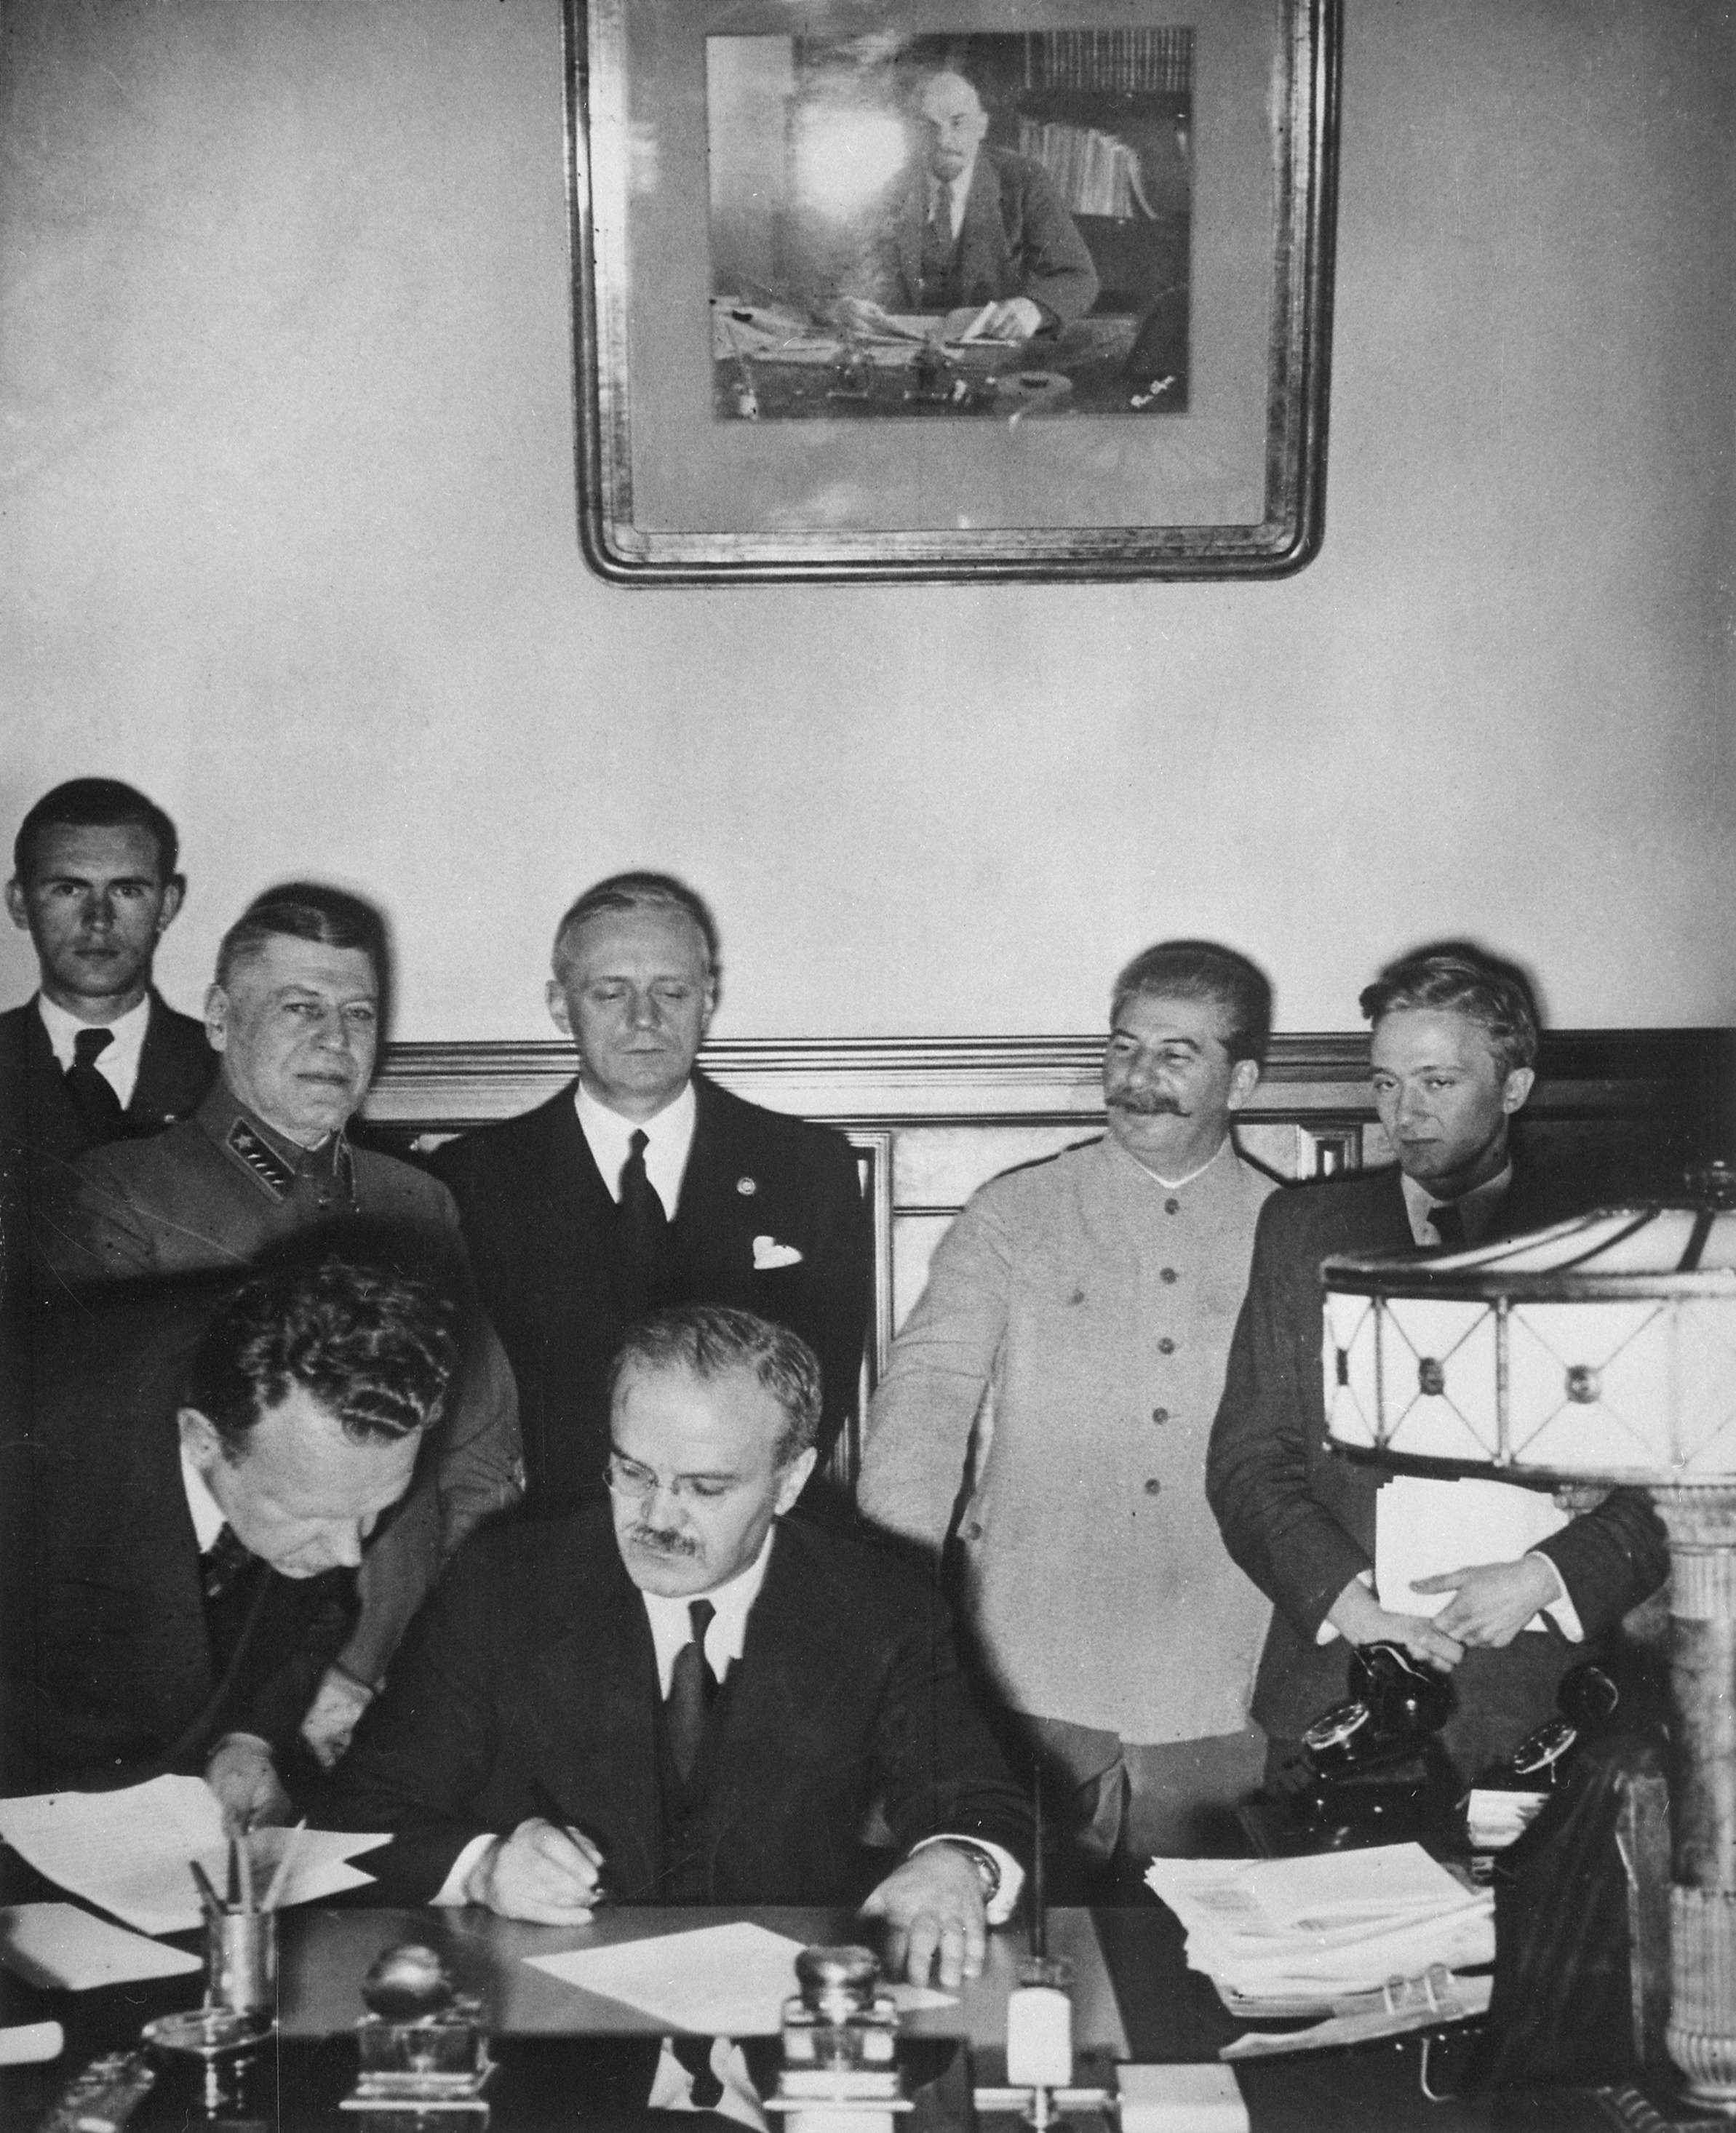 Ο Μόλοτοφ (υπογράφοντας), ο Ρίμπεντροπ (με τα μαύρα πίσω από τον Μόλοτοφ) και ο Στάλιν (δεξιά) στις 23 Αυγούστου 1939.